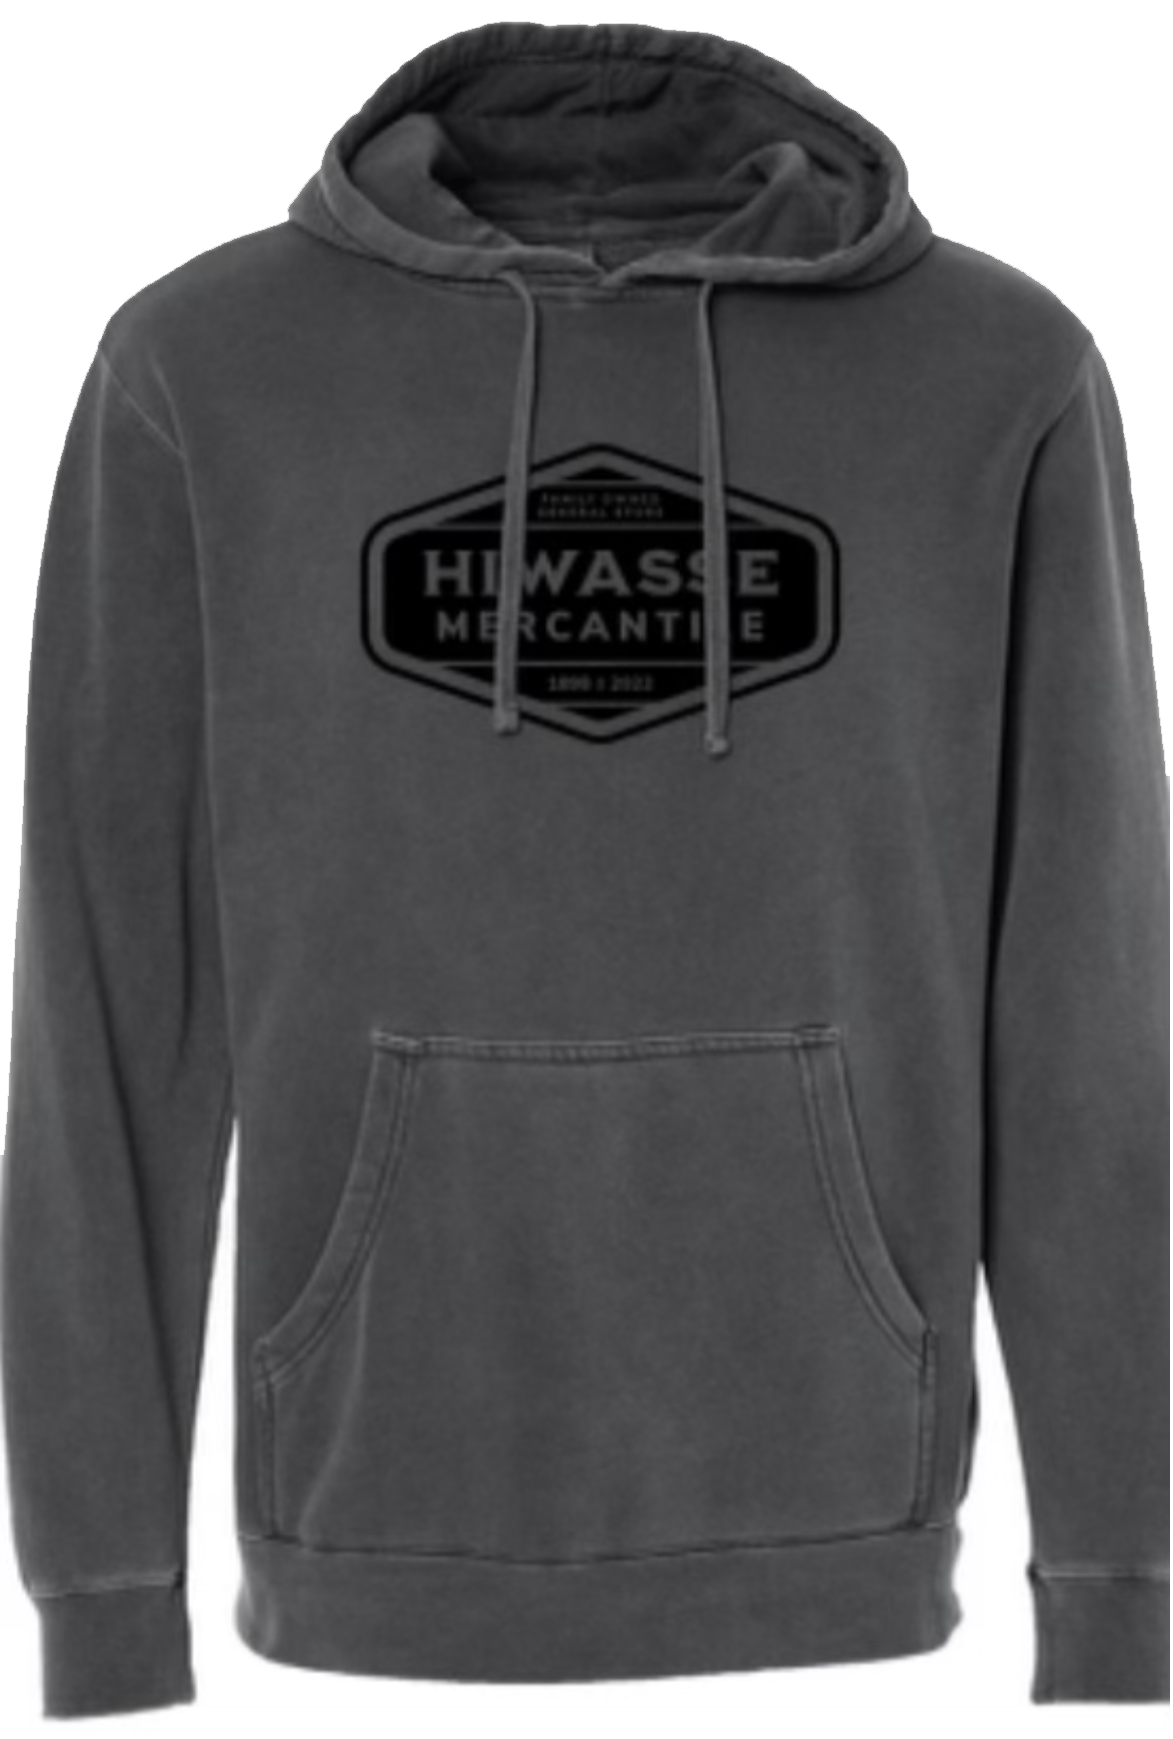 Hiwasse Mercantile Hooded Sweatshirt